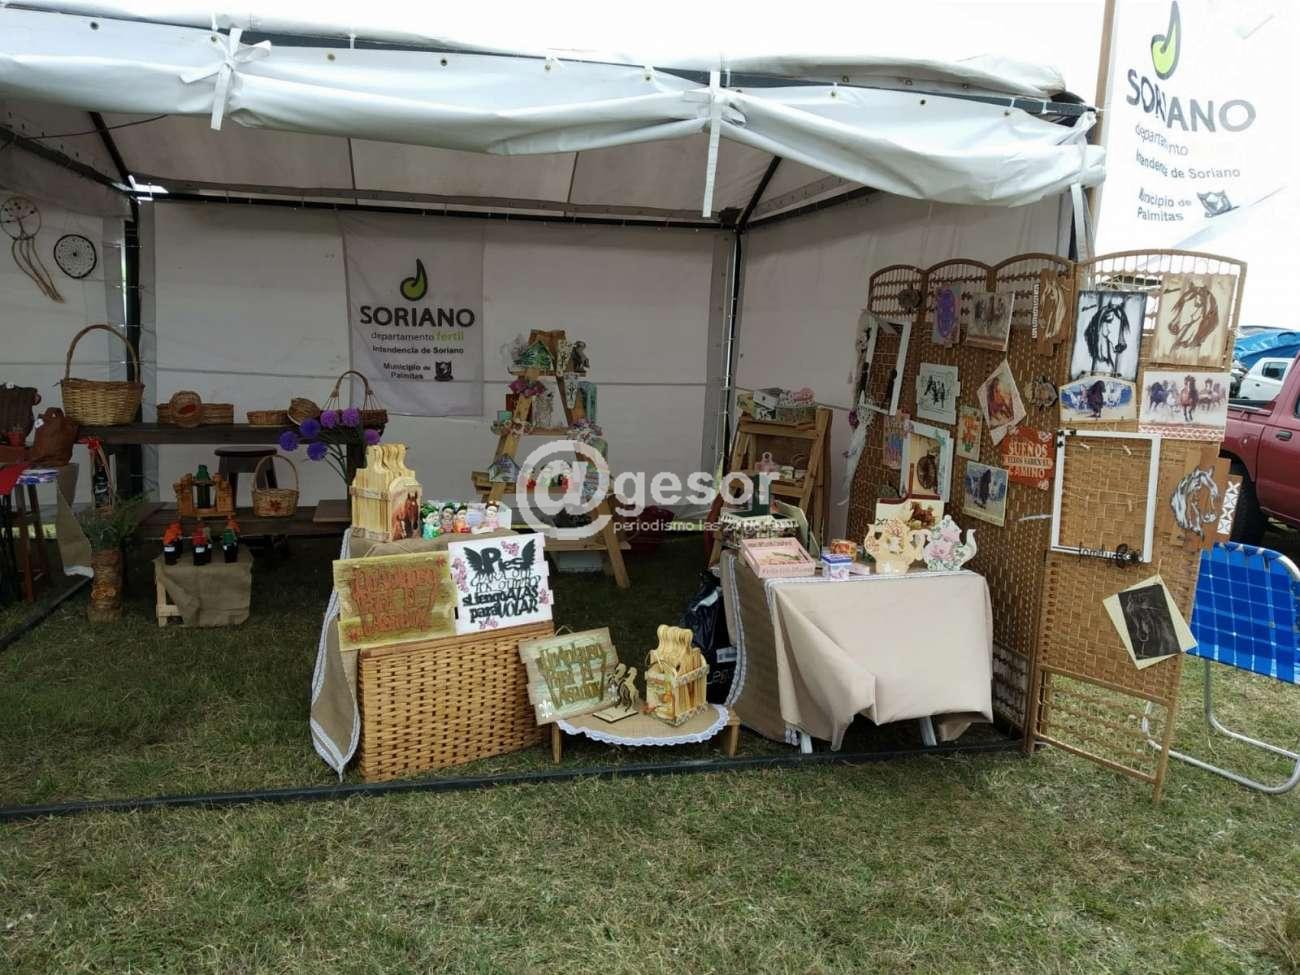 Allí realizaron la exposición y venta de artesanías y productos locales, los que fueron muy requeridos por el público visitante.